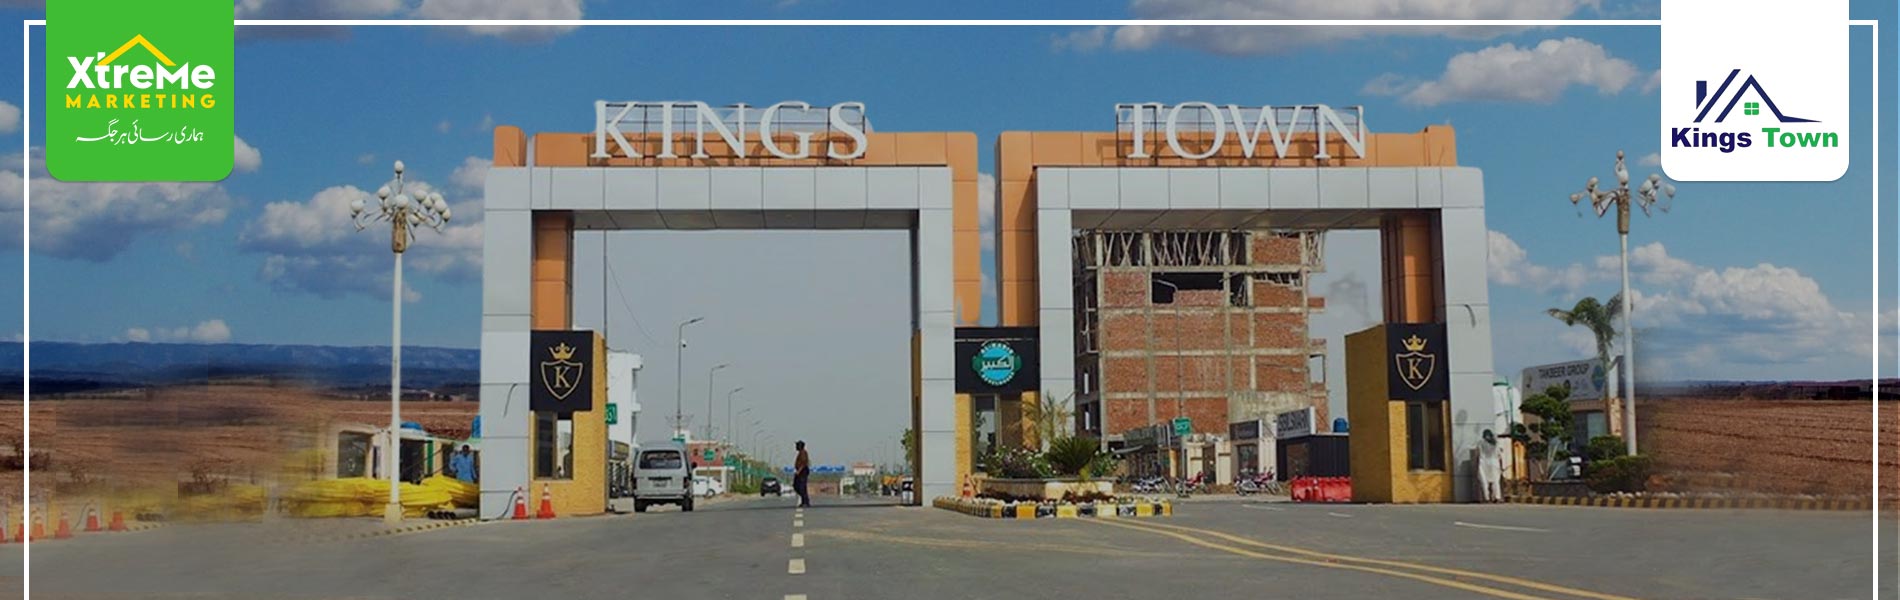 Kings Town Lahore main gate.jpg